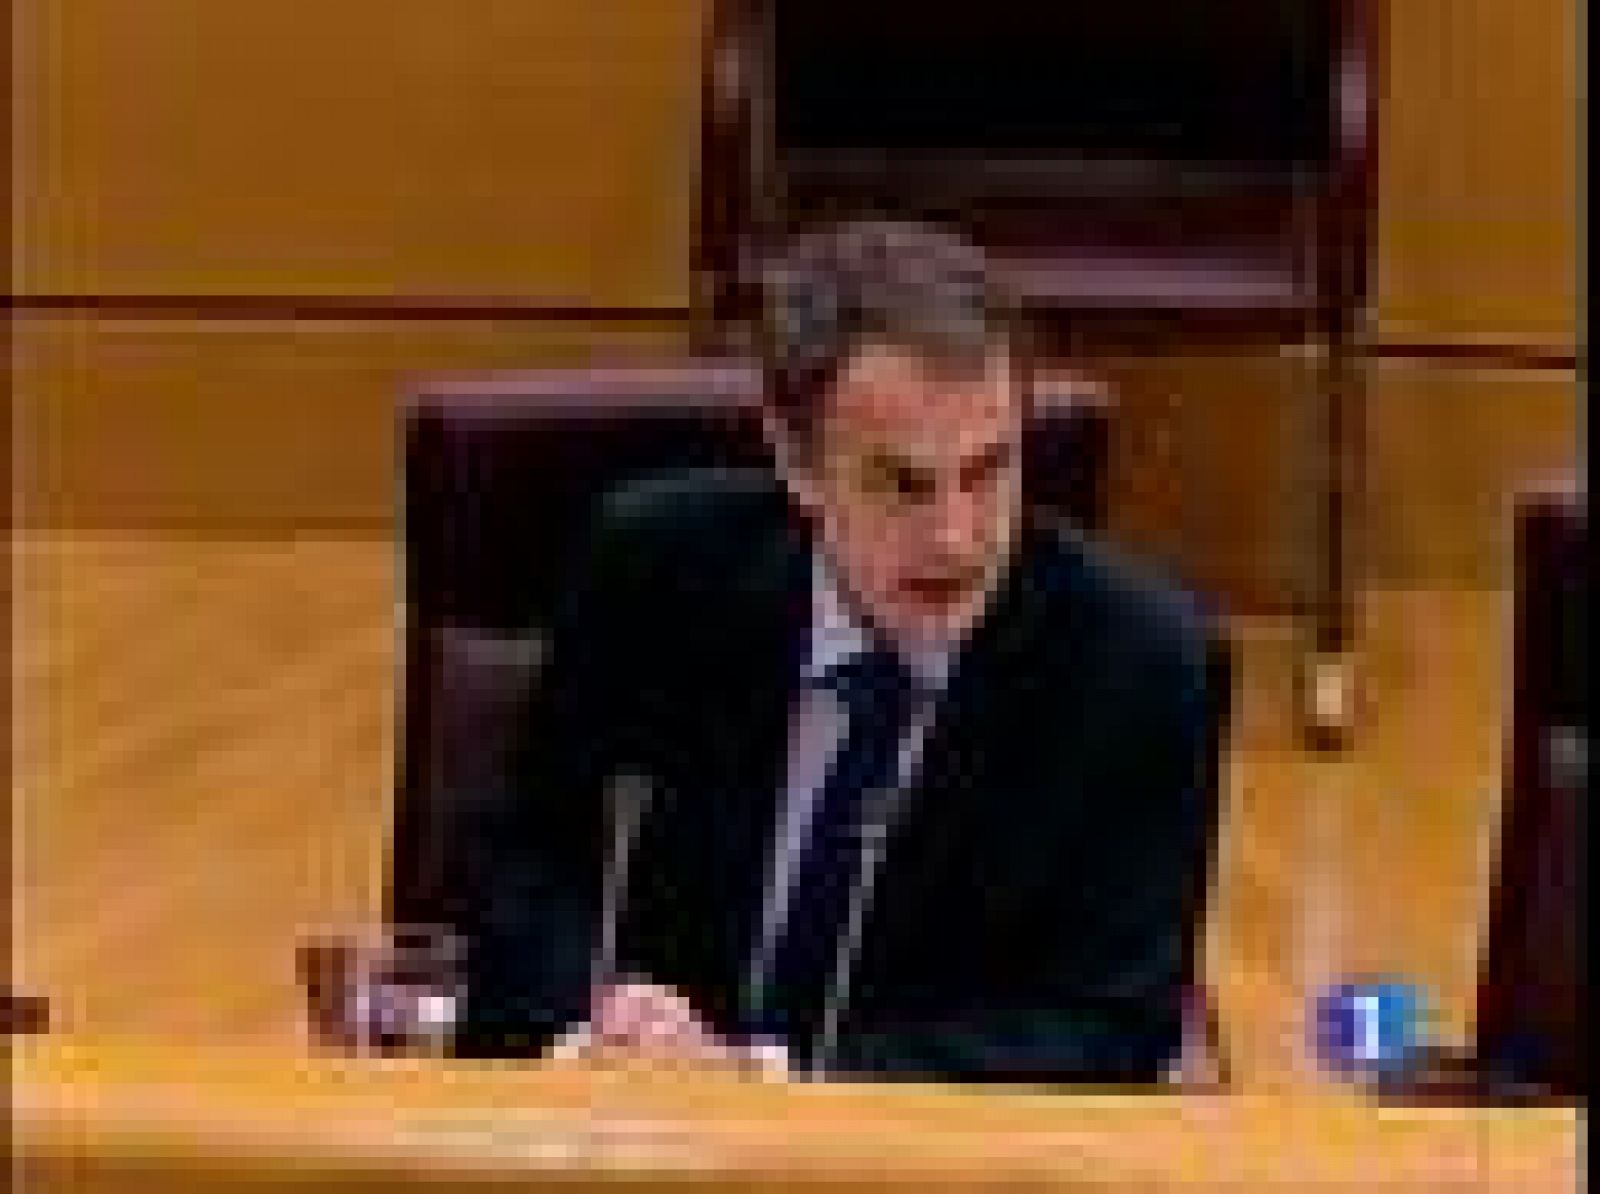 Lo aprobará el viernes, según ha anunciado hoy el presidente Rodríguez Zapatero en el Senado. Ha sido en una reunión con su grupo parlamentario para explicarles su planes y reformas frente a la crisis.